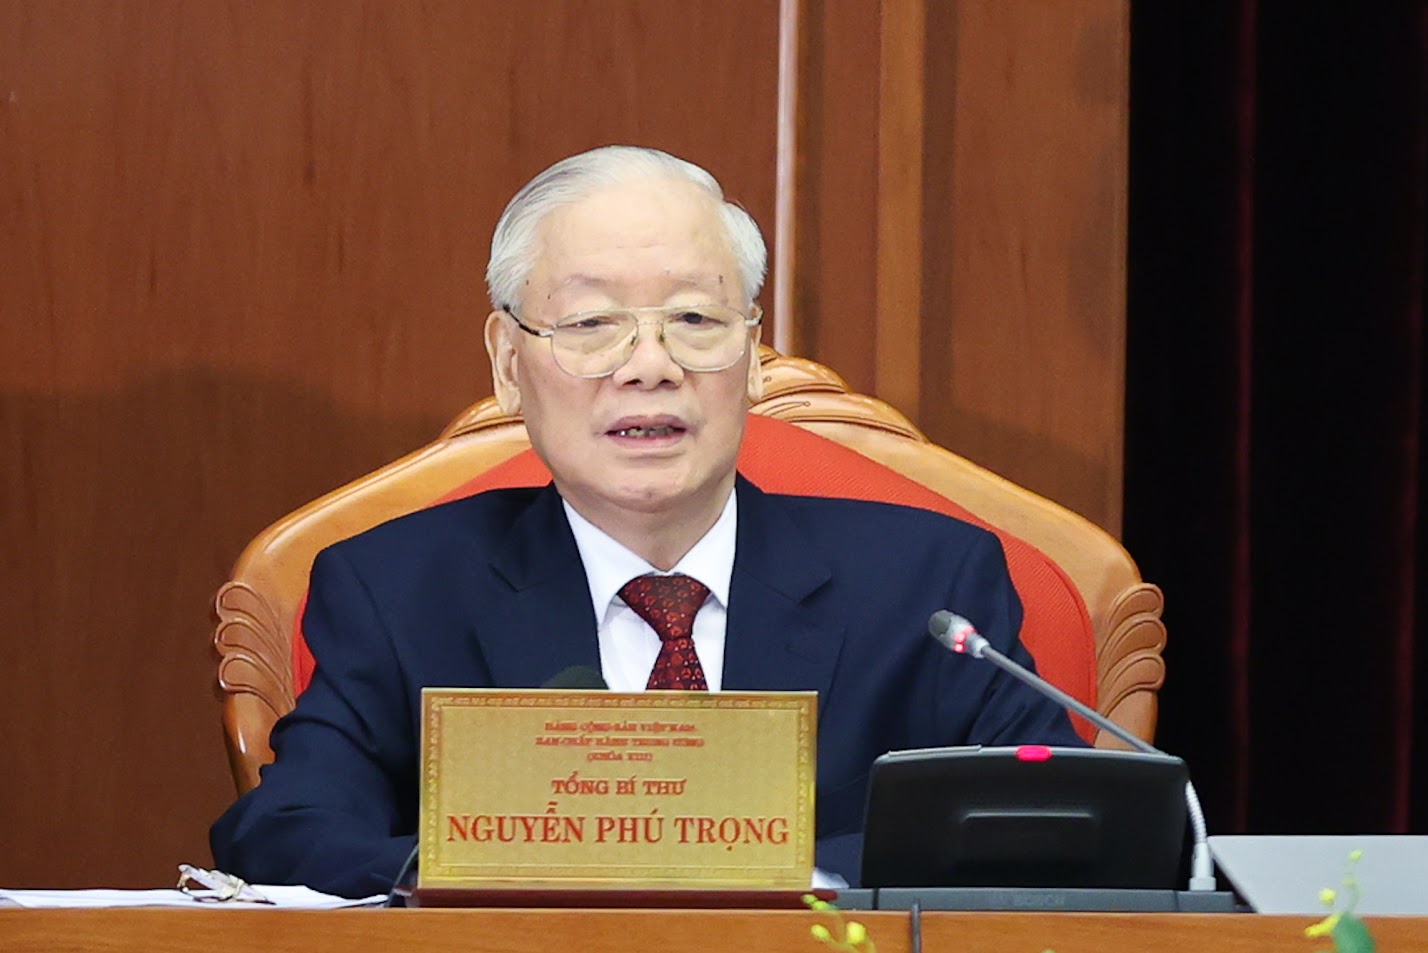 Phát biểu khai mạc Hội nghị Trung ương 9 của Tổng Bí thư Nguyễn Phú Trọng- Ảnh 1.